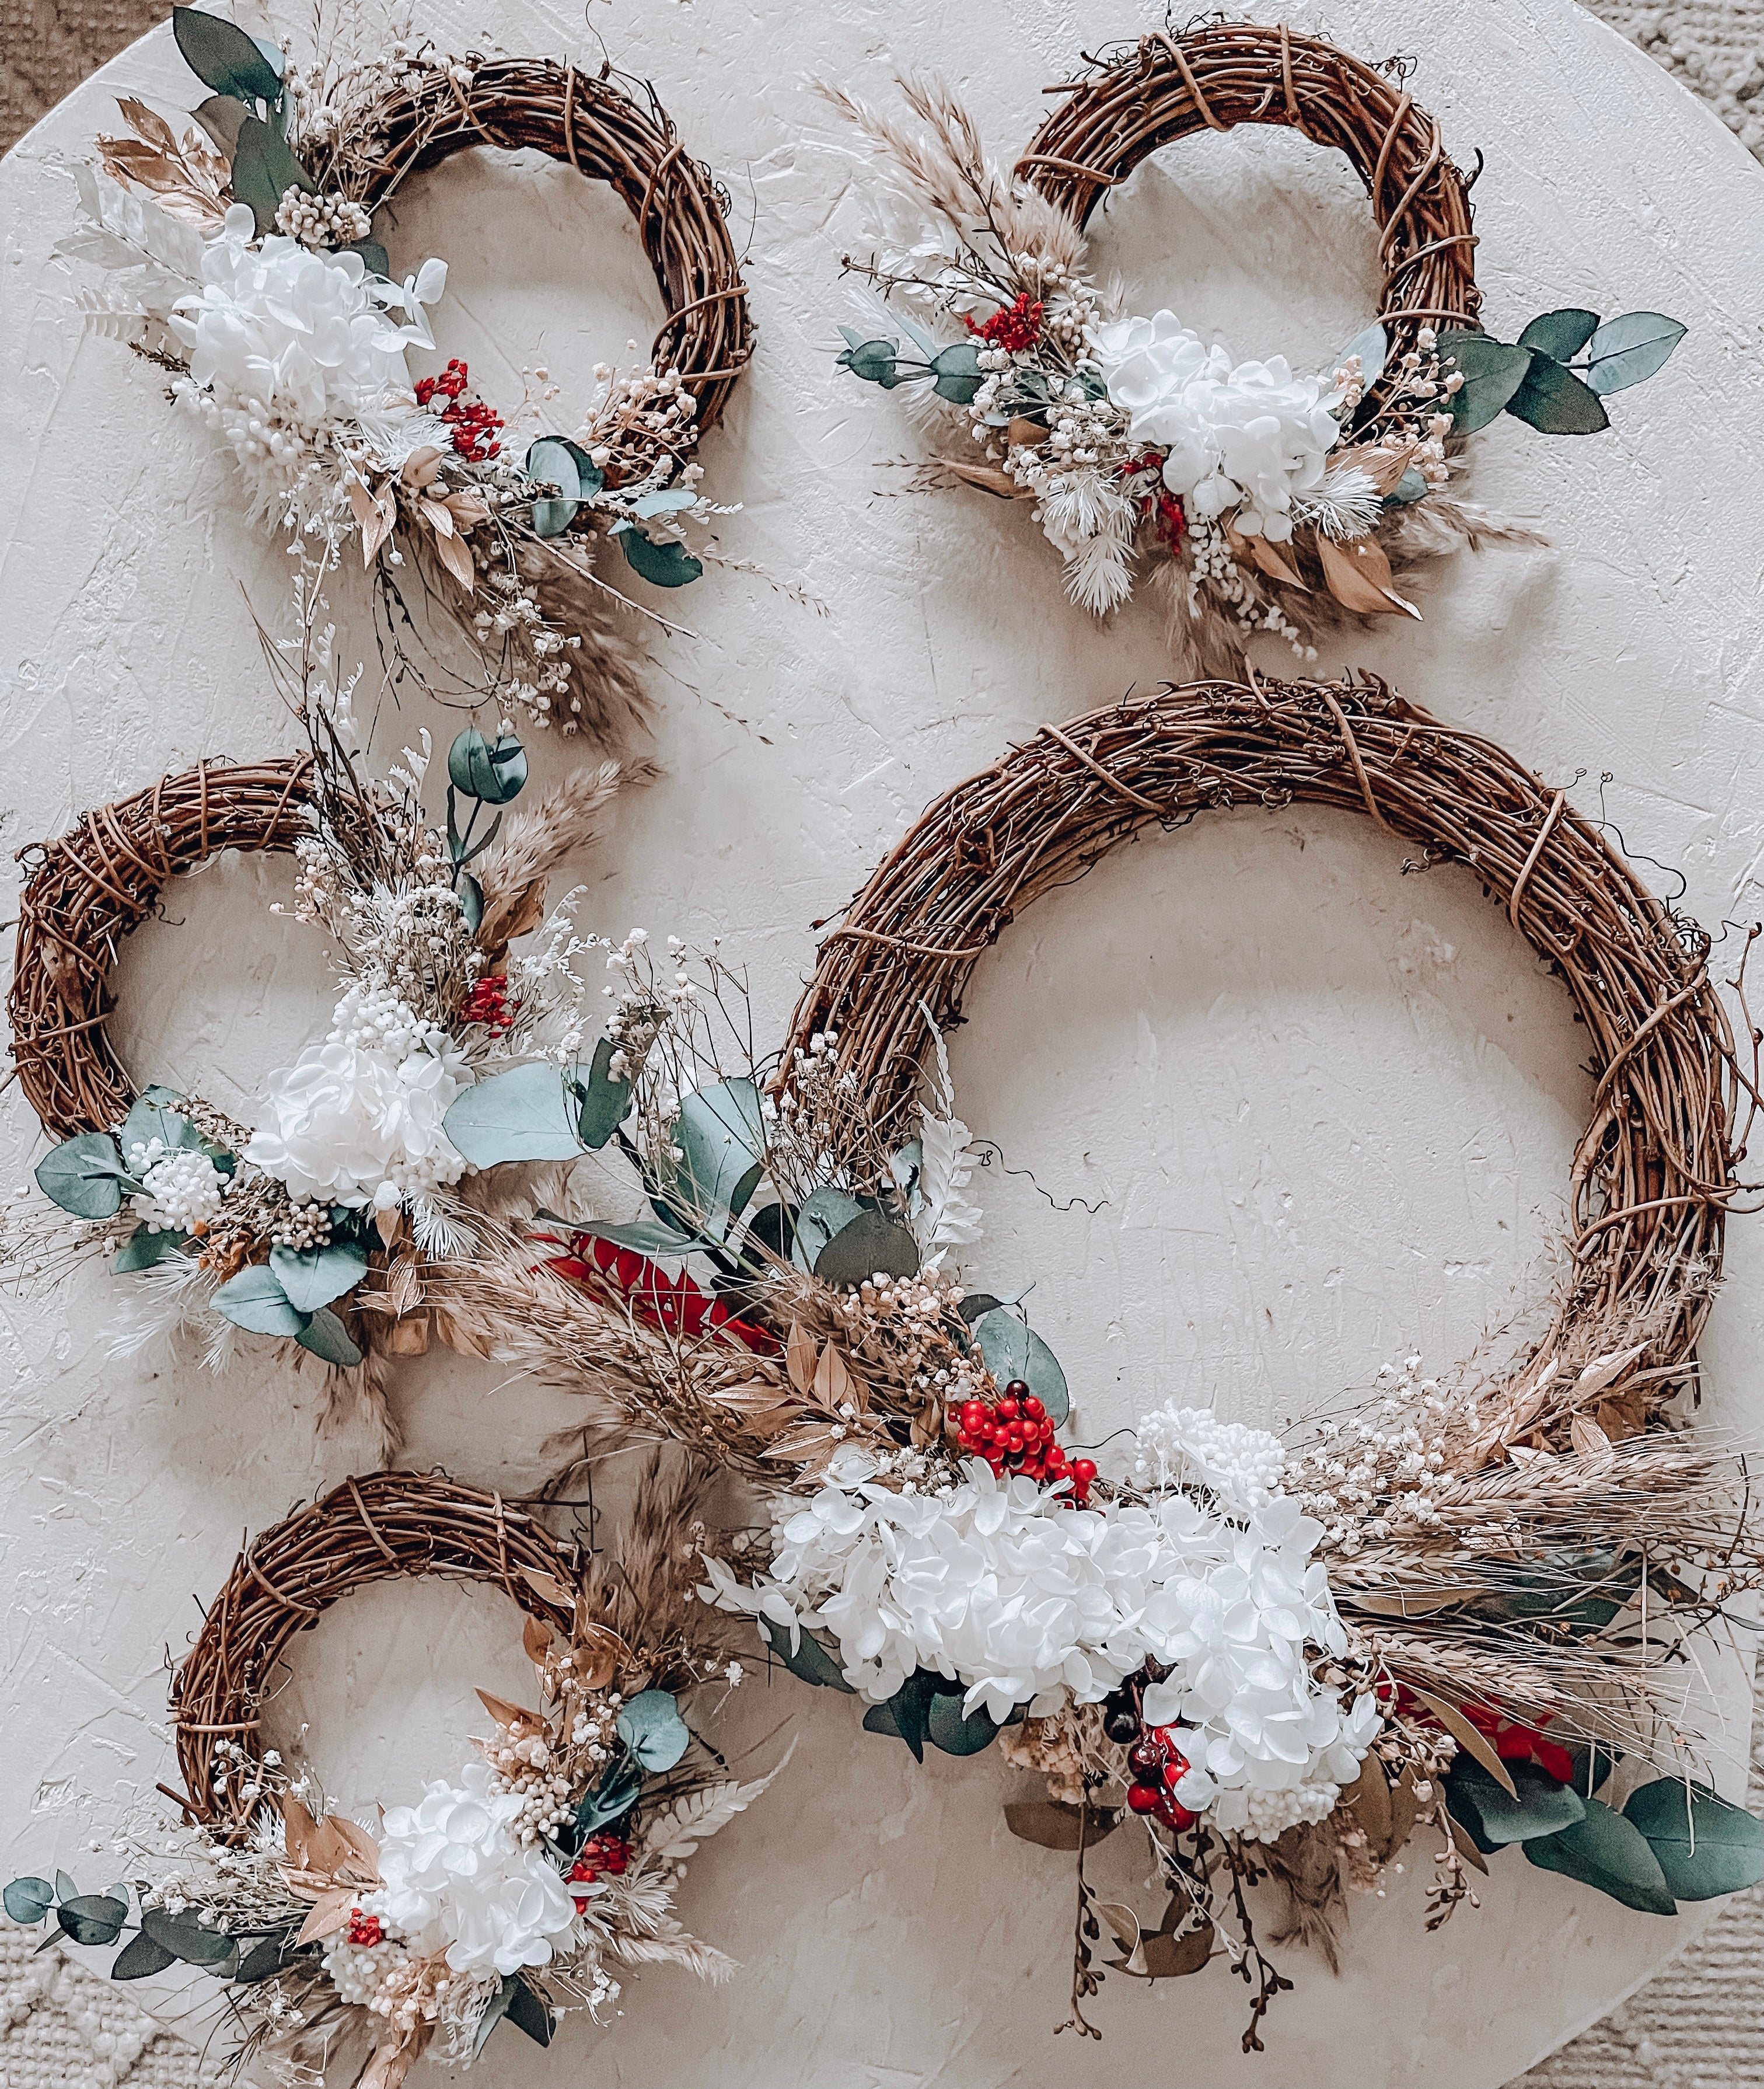 Mini everlasting Christmas wreaths.